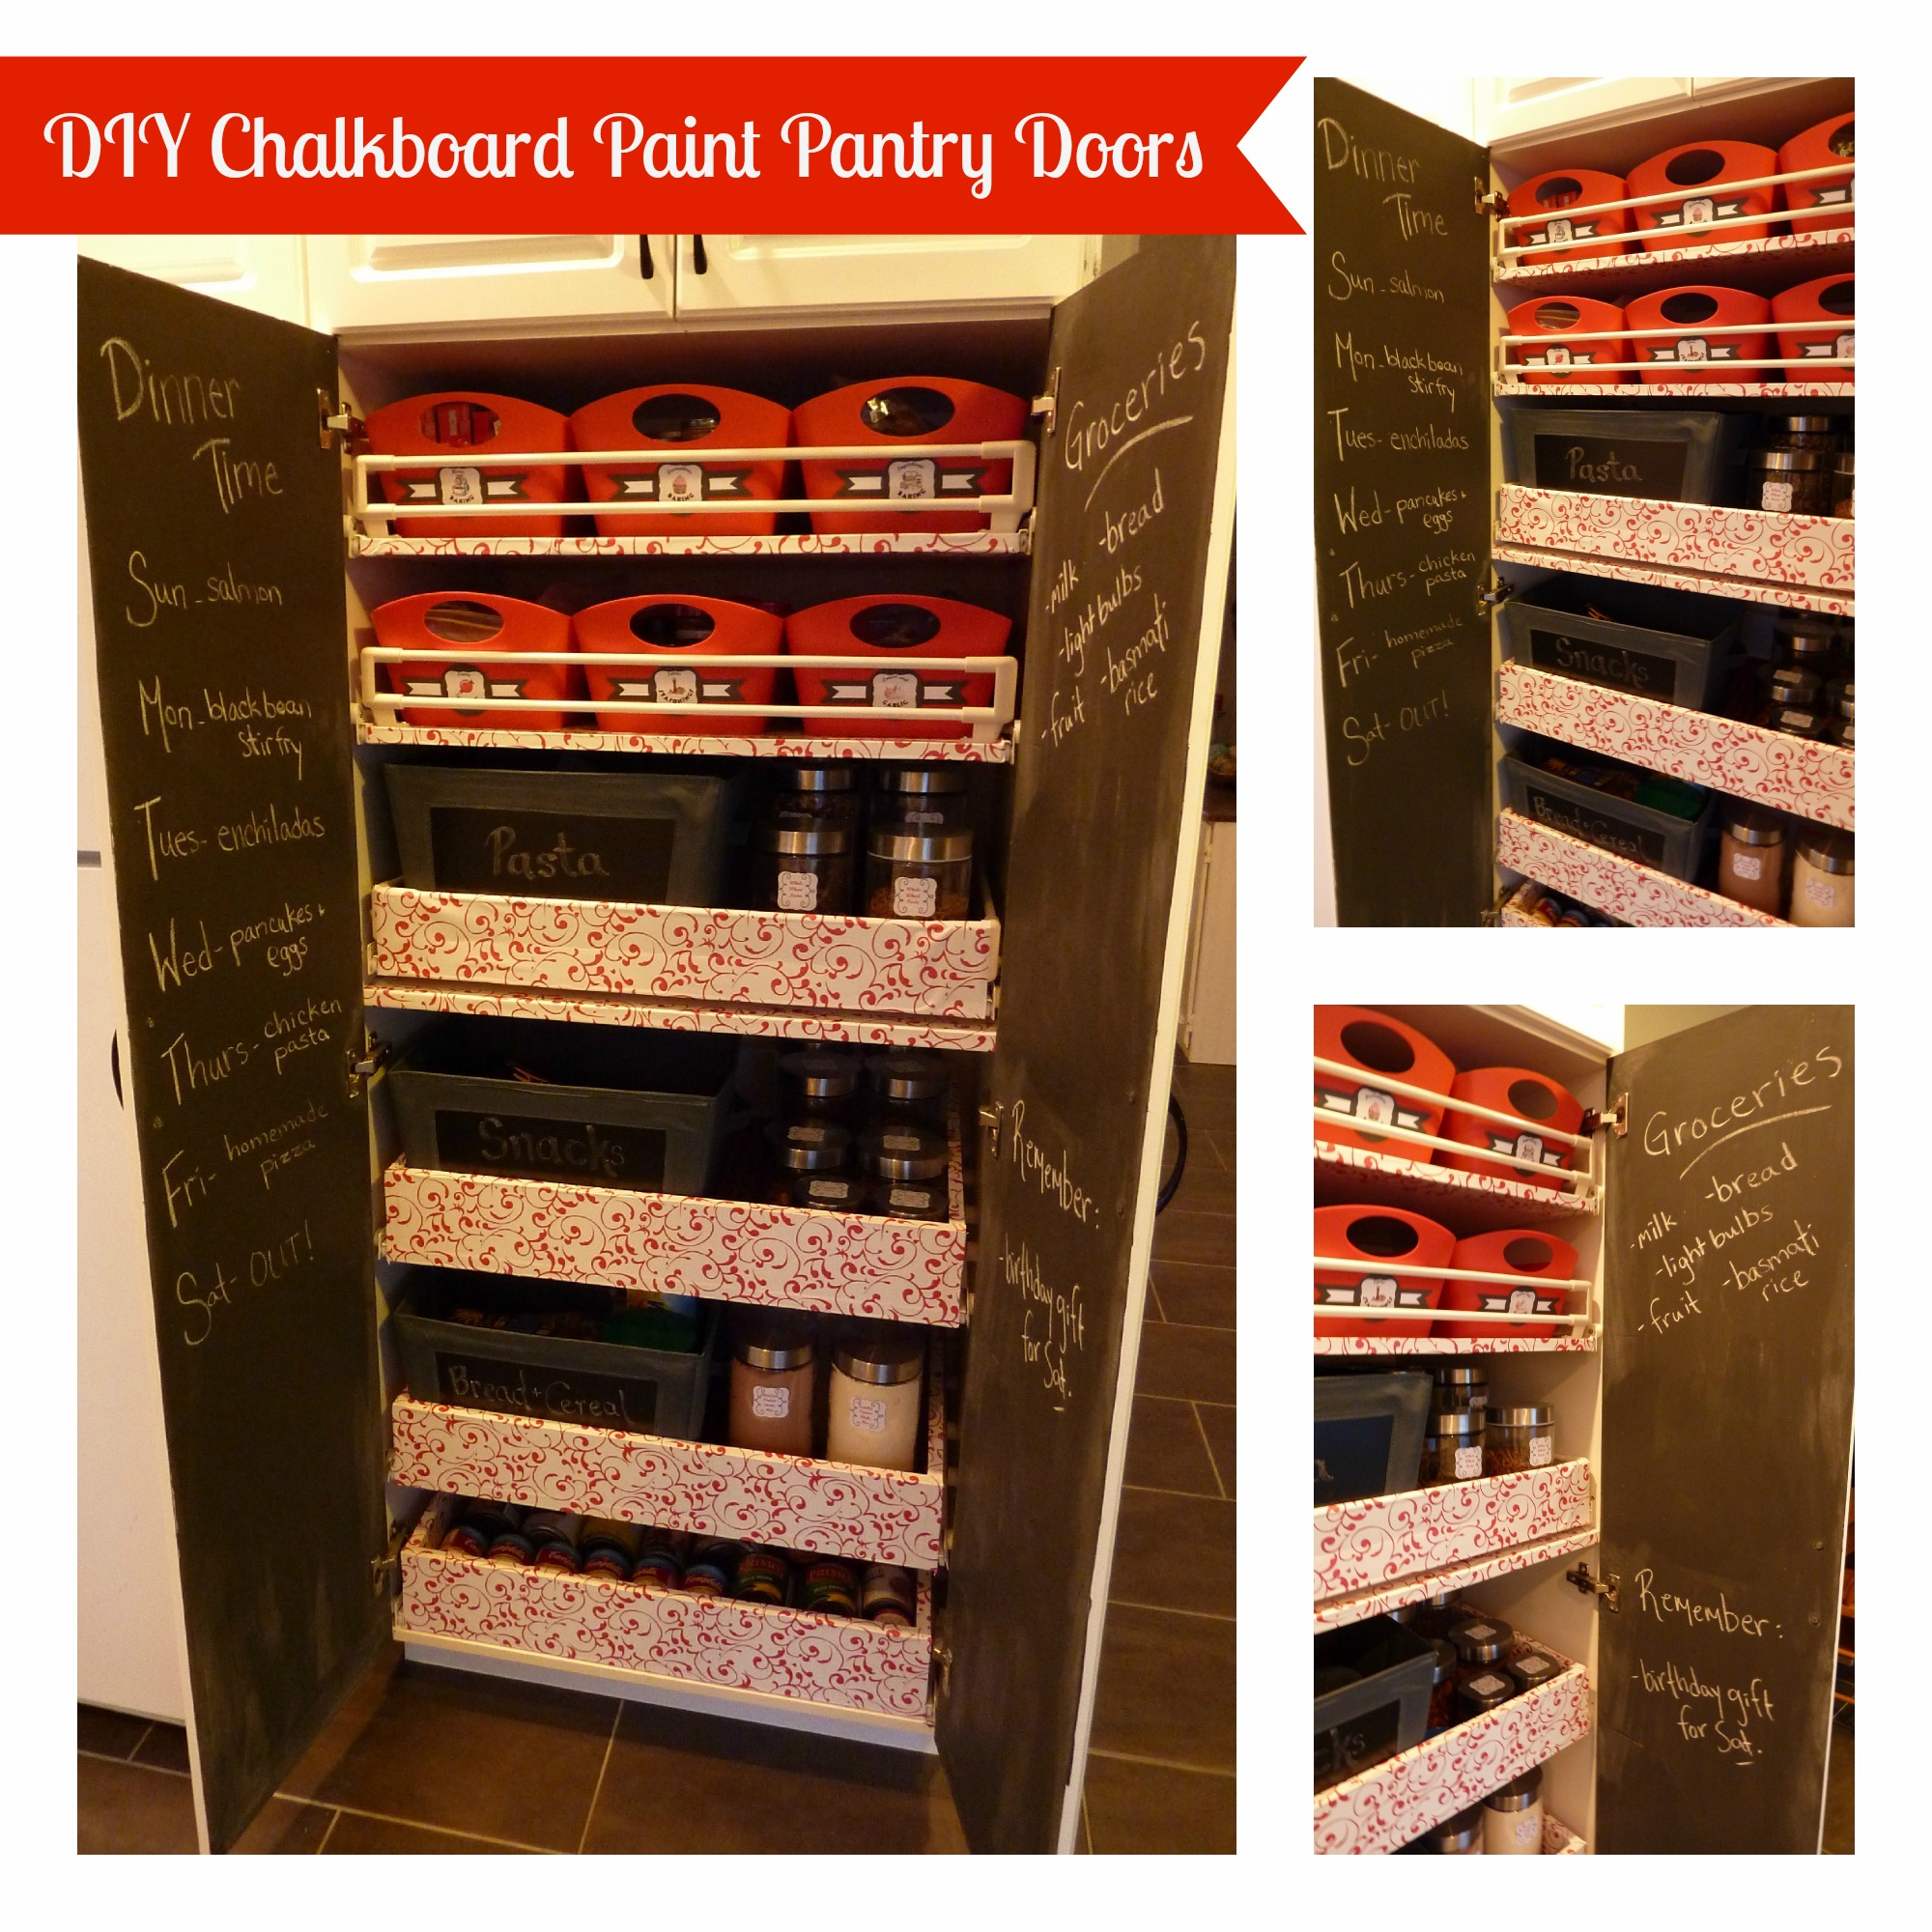 DIY Chalkboard Paint Pantry Doors 2